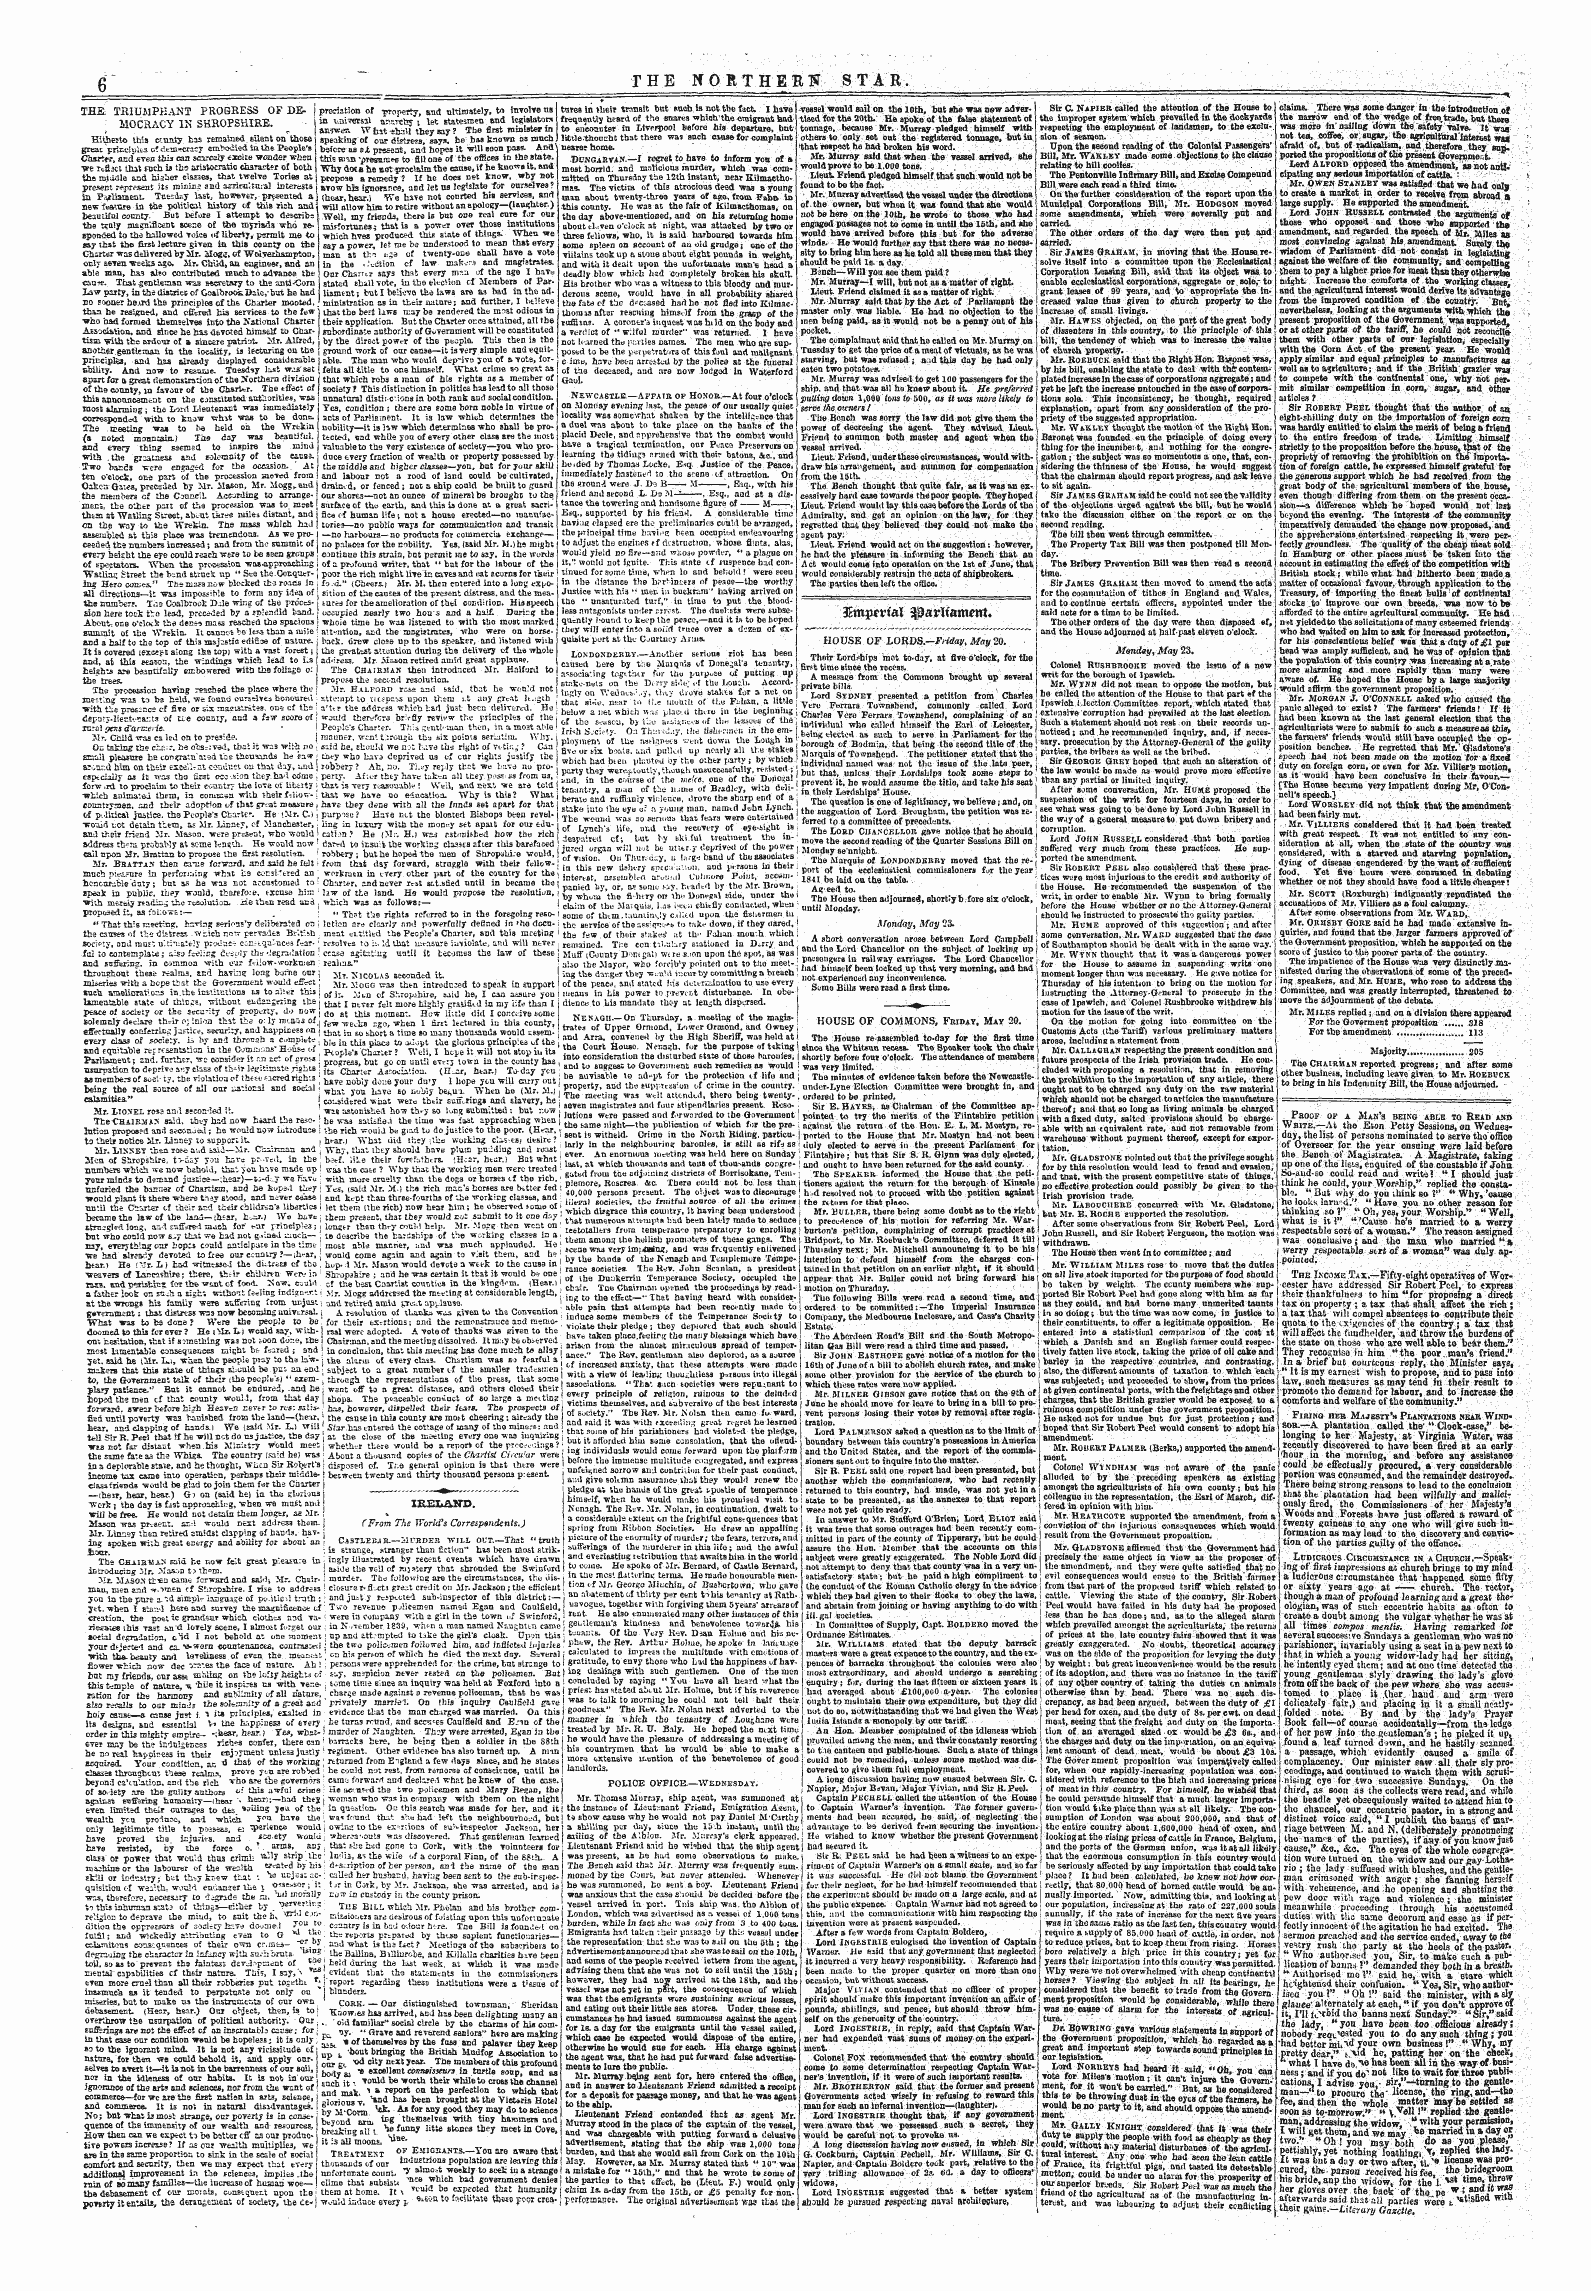 Northern Star (1837-1852): jS F Y, 4th edition - Kmpfvtal Parliament*